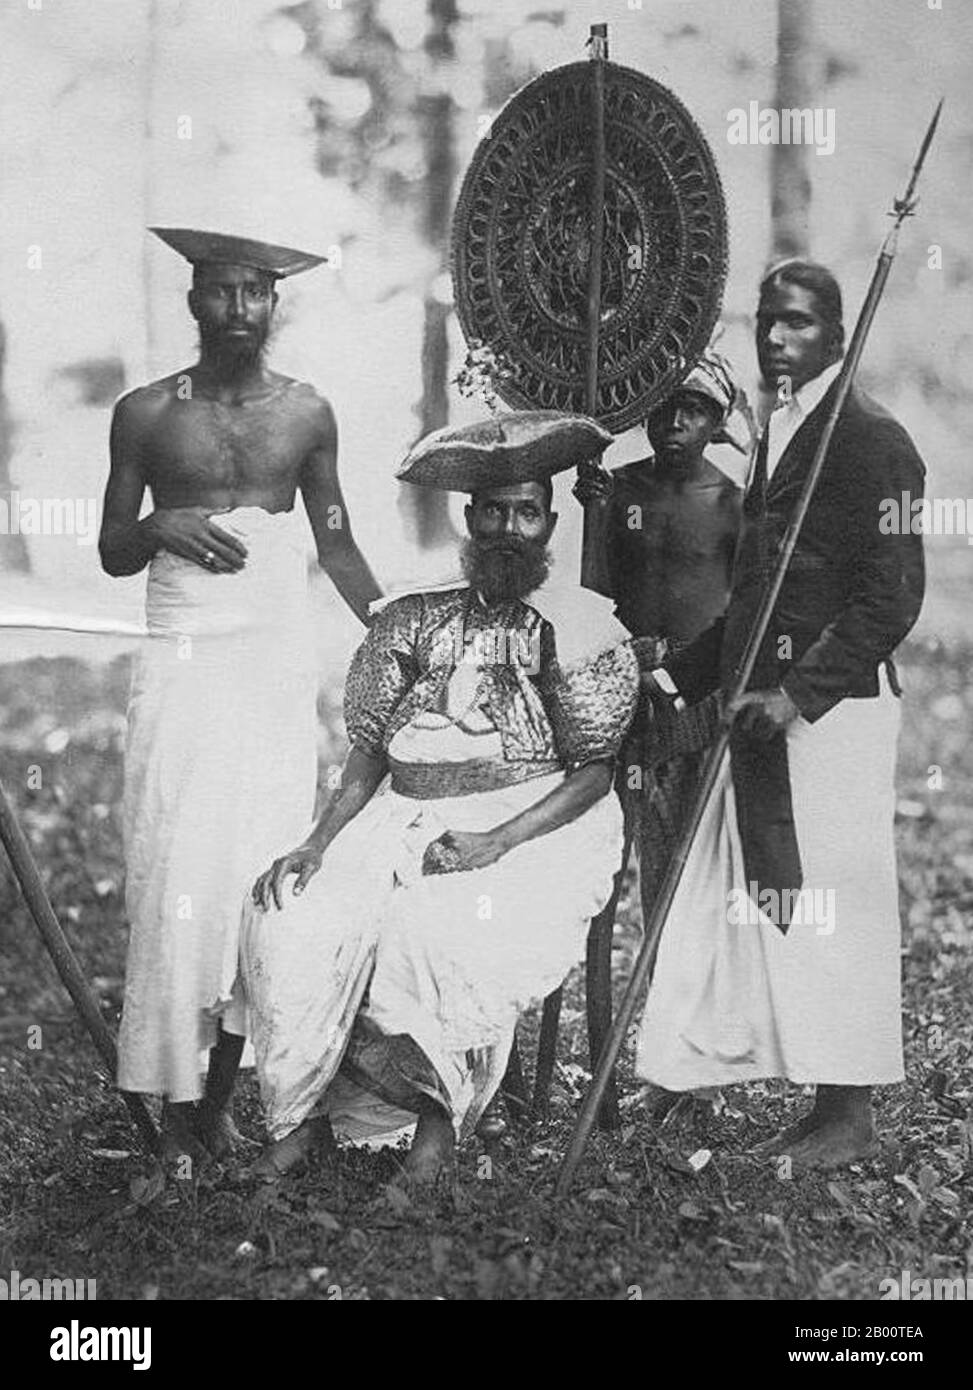 Sri Lanka: Il capo di Gambola, insieme a tre fermi. Foto di Charles T. Scowen (1852-1948), c. 1880. Nel 1592 Kandy divenne la capitale dell'ultimo regno indipendente rimasto nello Sri Lanka dopo che le regioni costiere erano state conquistate dai portoghesi. Kandy rimase indipendente fino all'inizio del XIX secolo. Nella seconda guerra del Kandyan, gli inglesi non incontrarono resistenza e raggiunsero la città il 10 febbraio 1815. Il 2 marzo 1815 fu firmato un trattato noto come Convenzione di Kandyan tra gli inglesi e i Radalas (aristocratici di Kandyan), con Kandy che divenne un protettorato britannico. Foto Stock